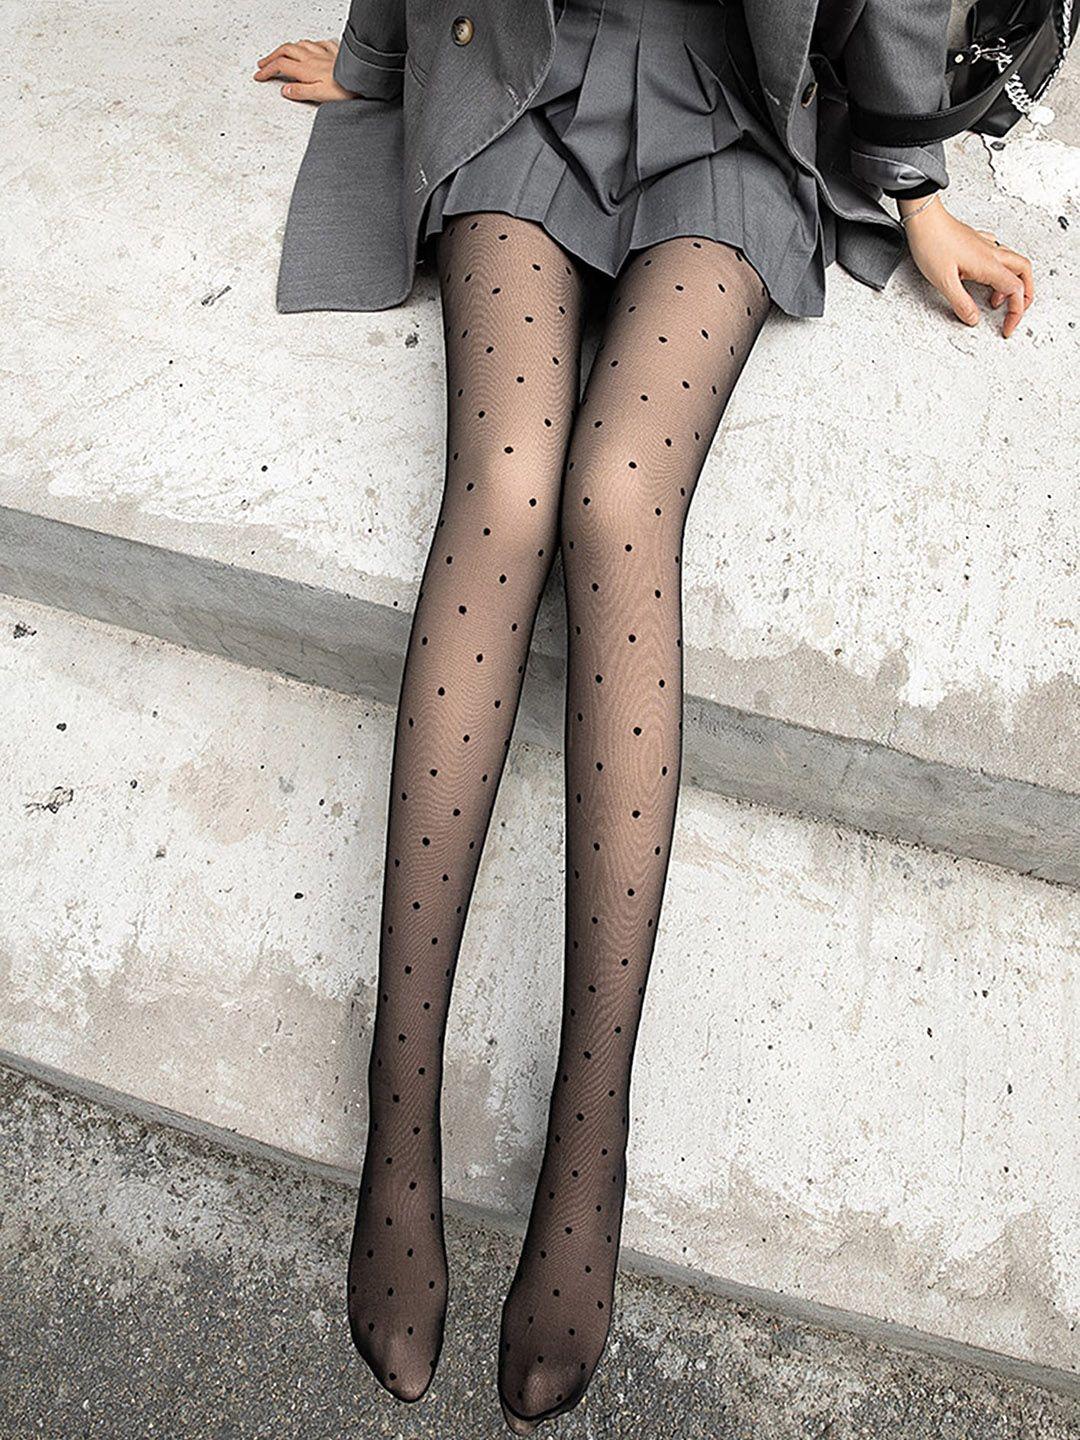 lulu & sky polka dot printed sheer stockings